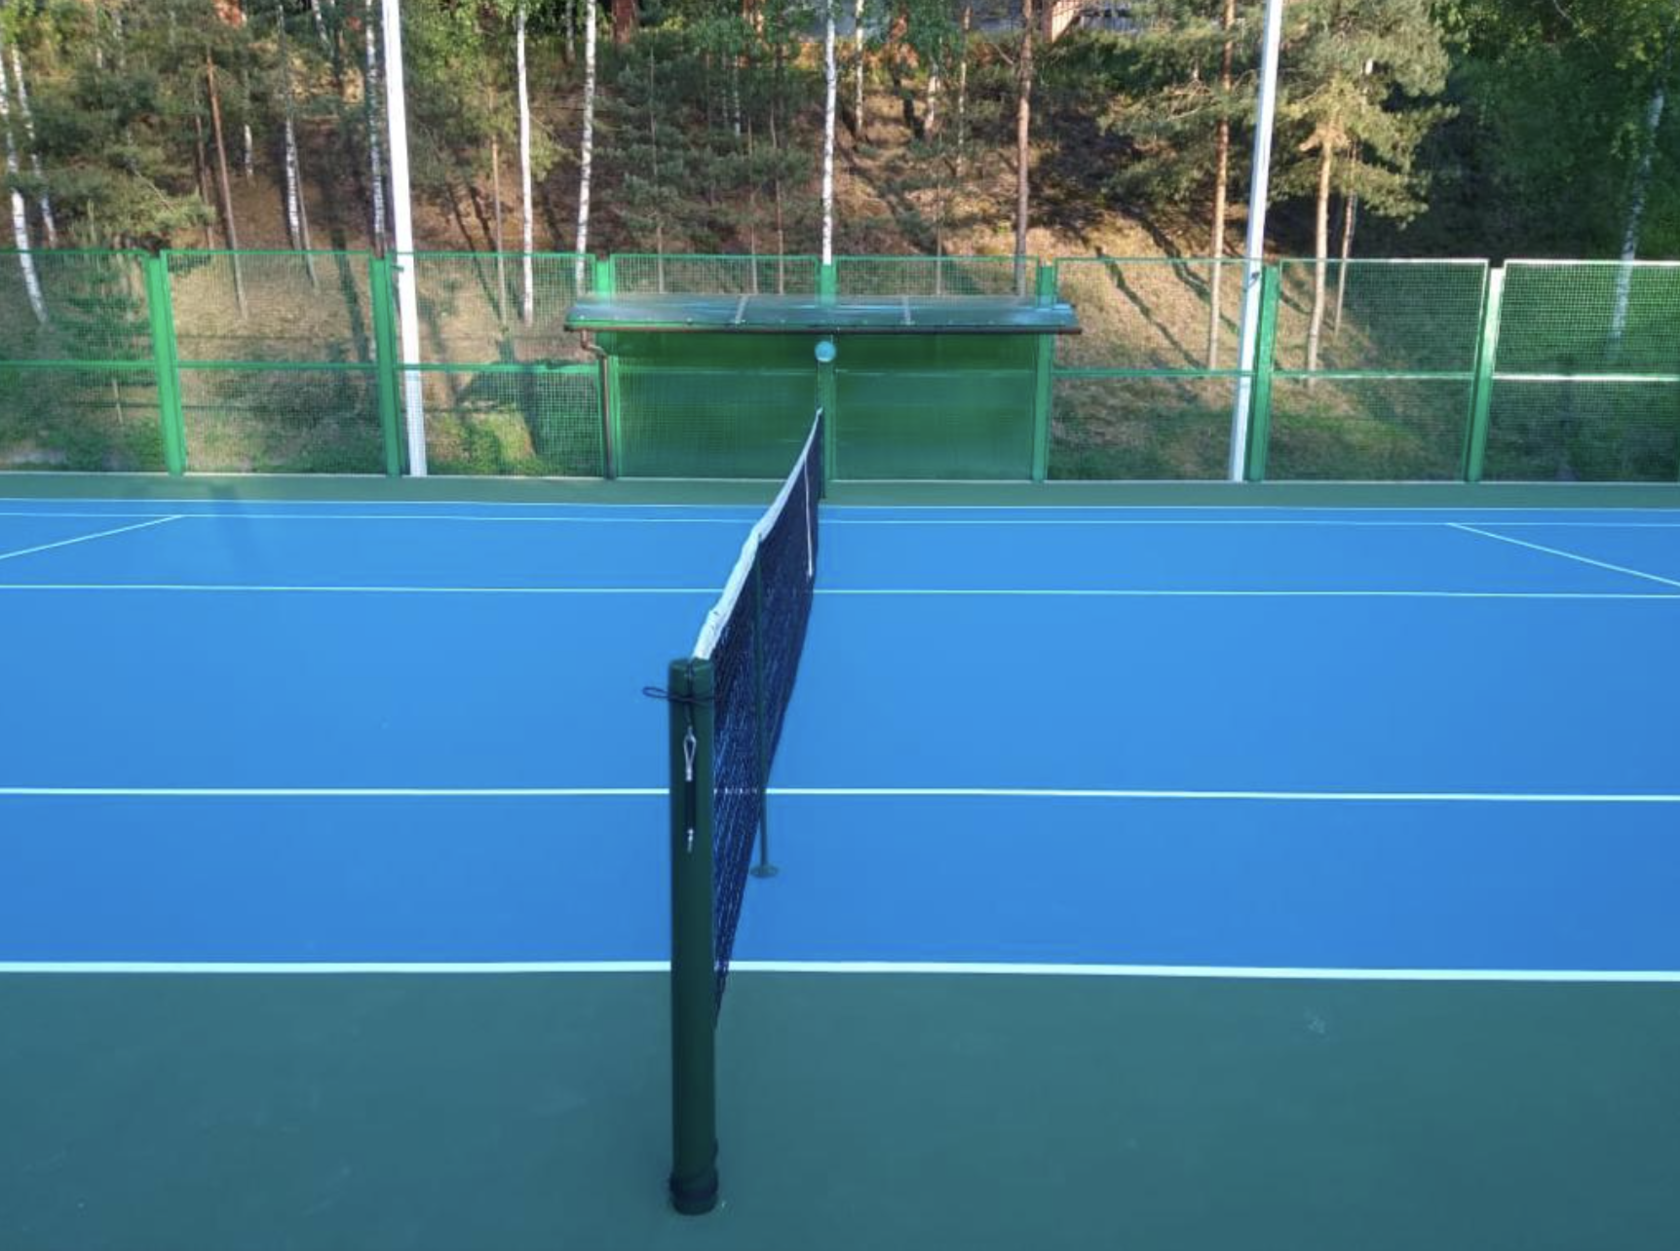 Теннисный корт грунт. Корт hard покрытие. Покрытие Хард для теннисных кортов. Теннисные корты грунт закрытые. Т рава